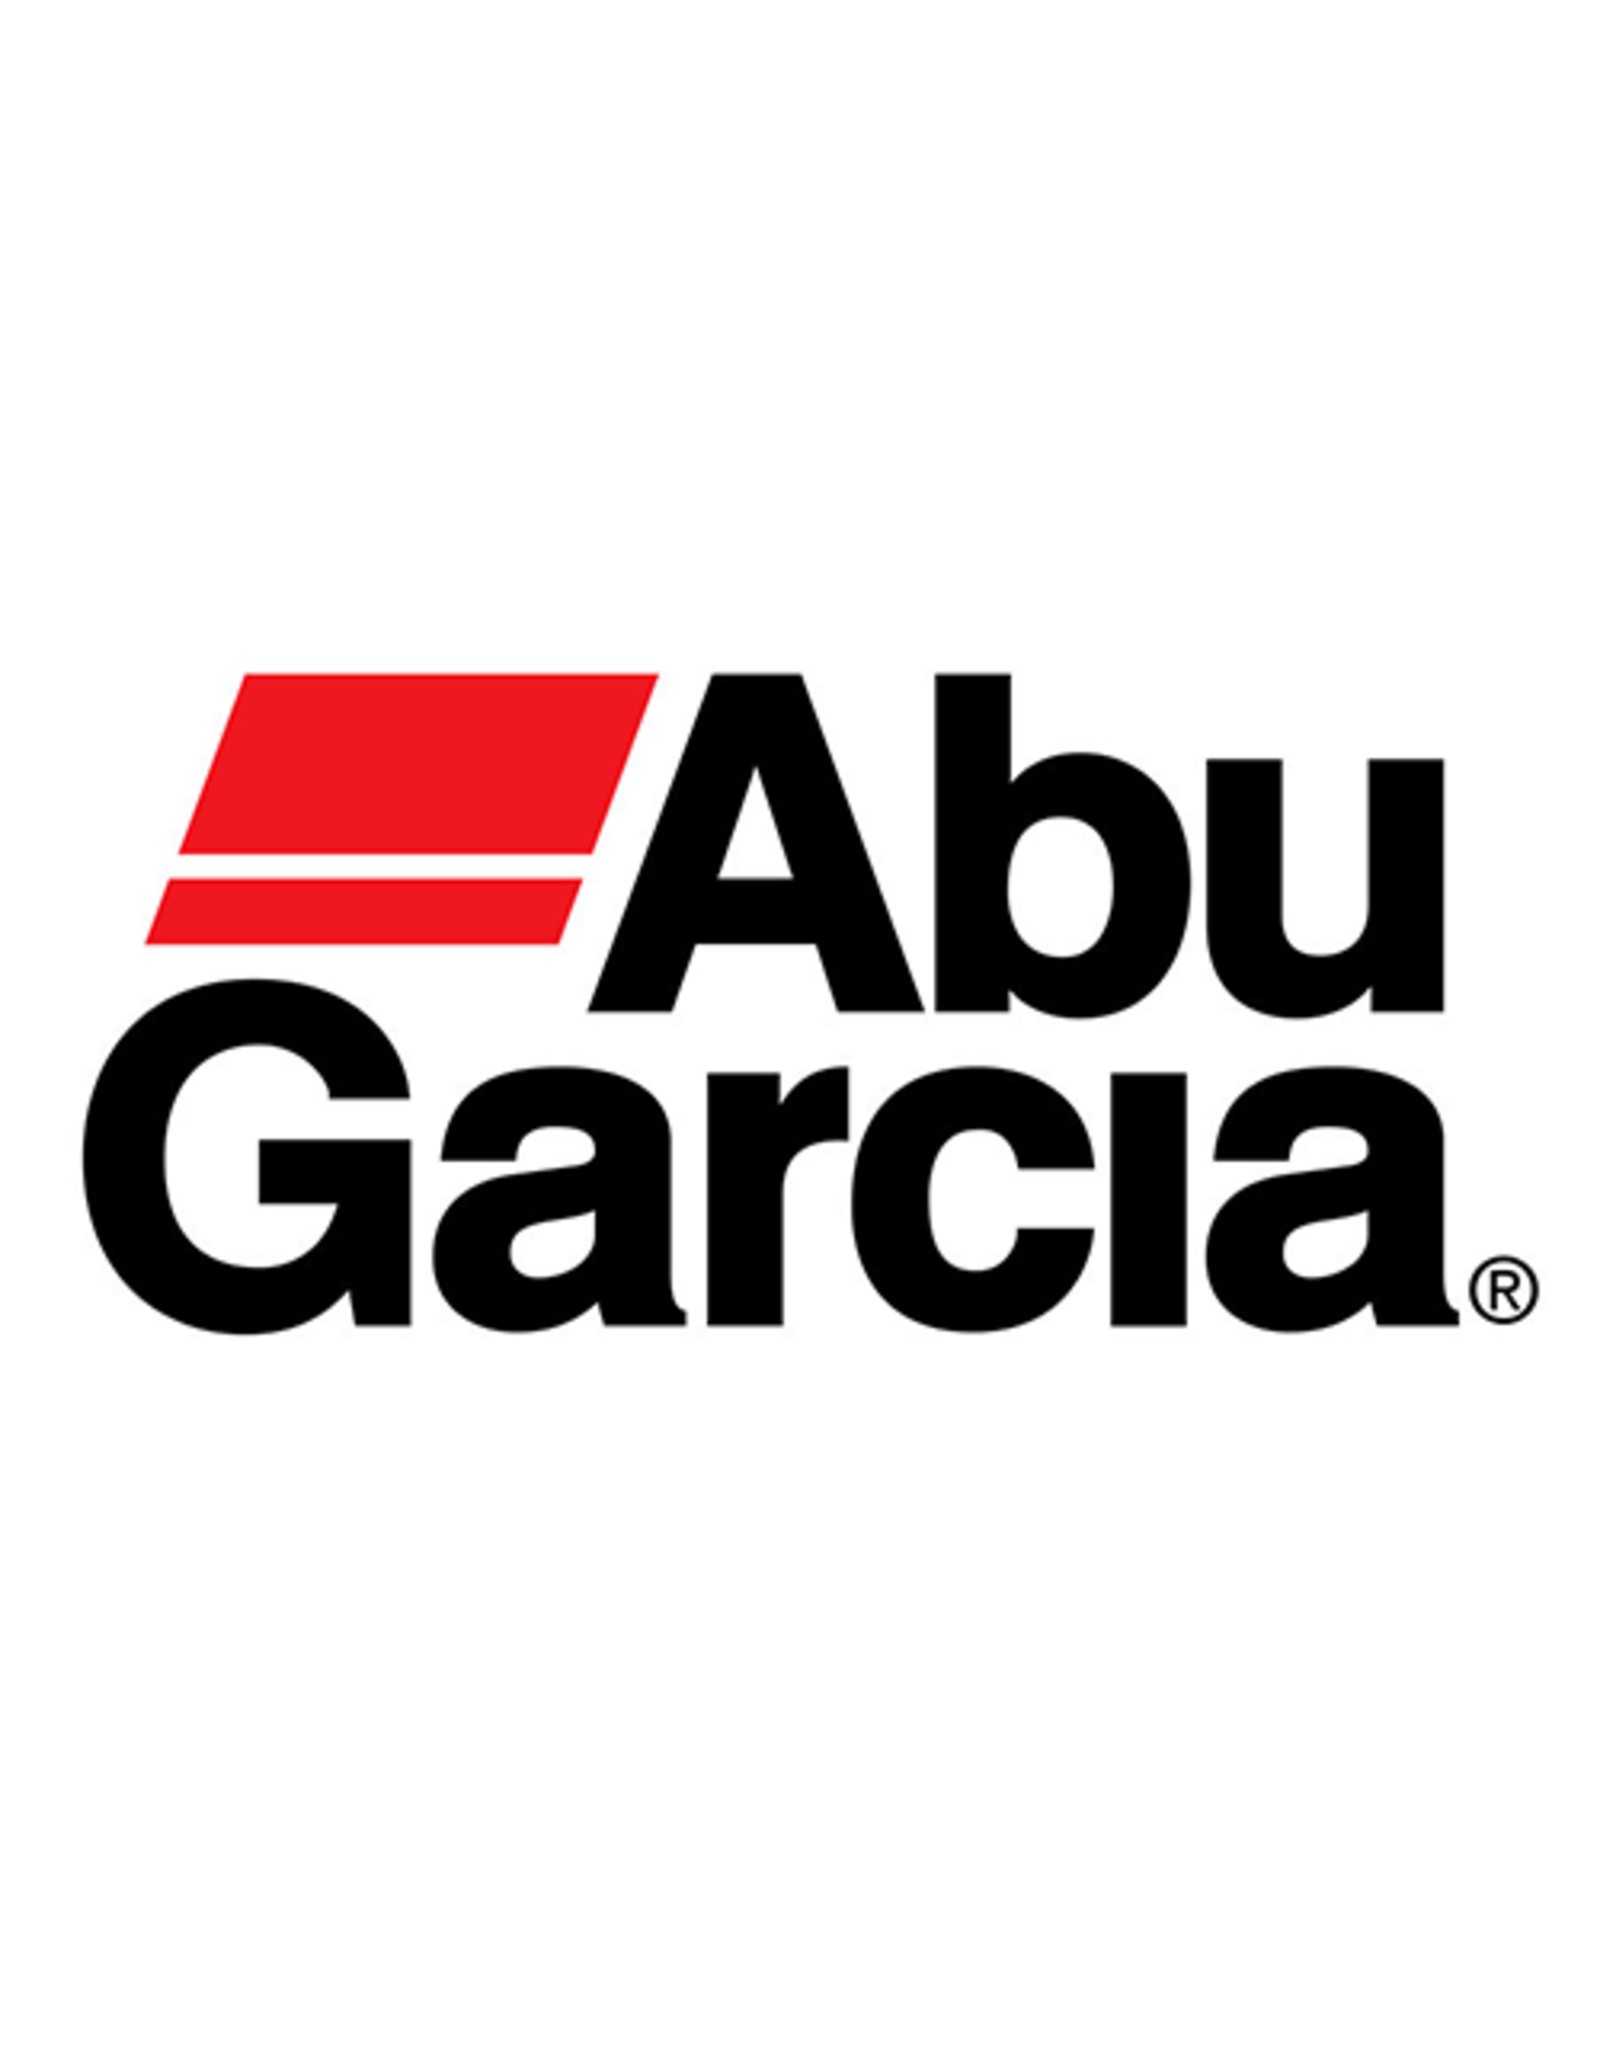 Abu Garcia 1128340  OWC SPRING